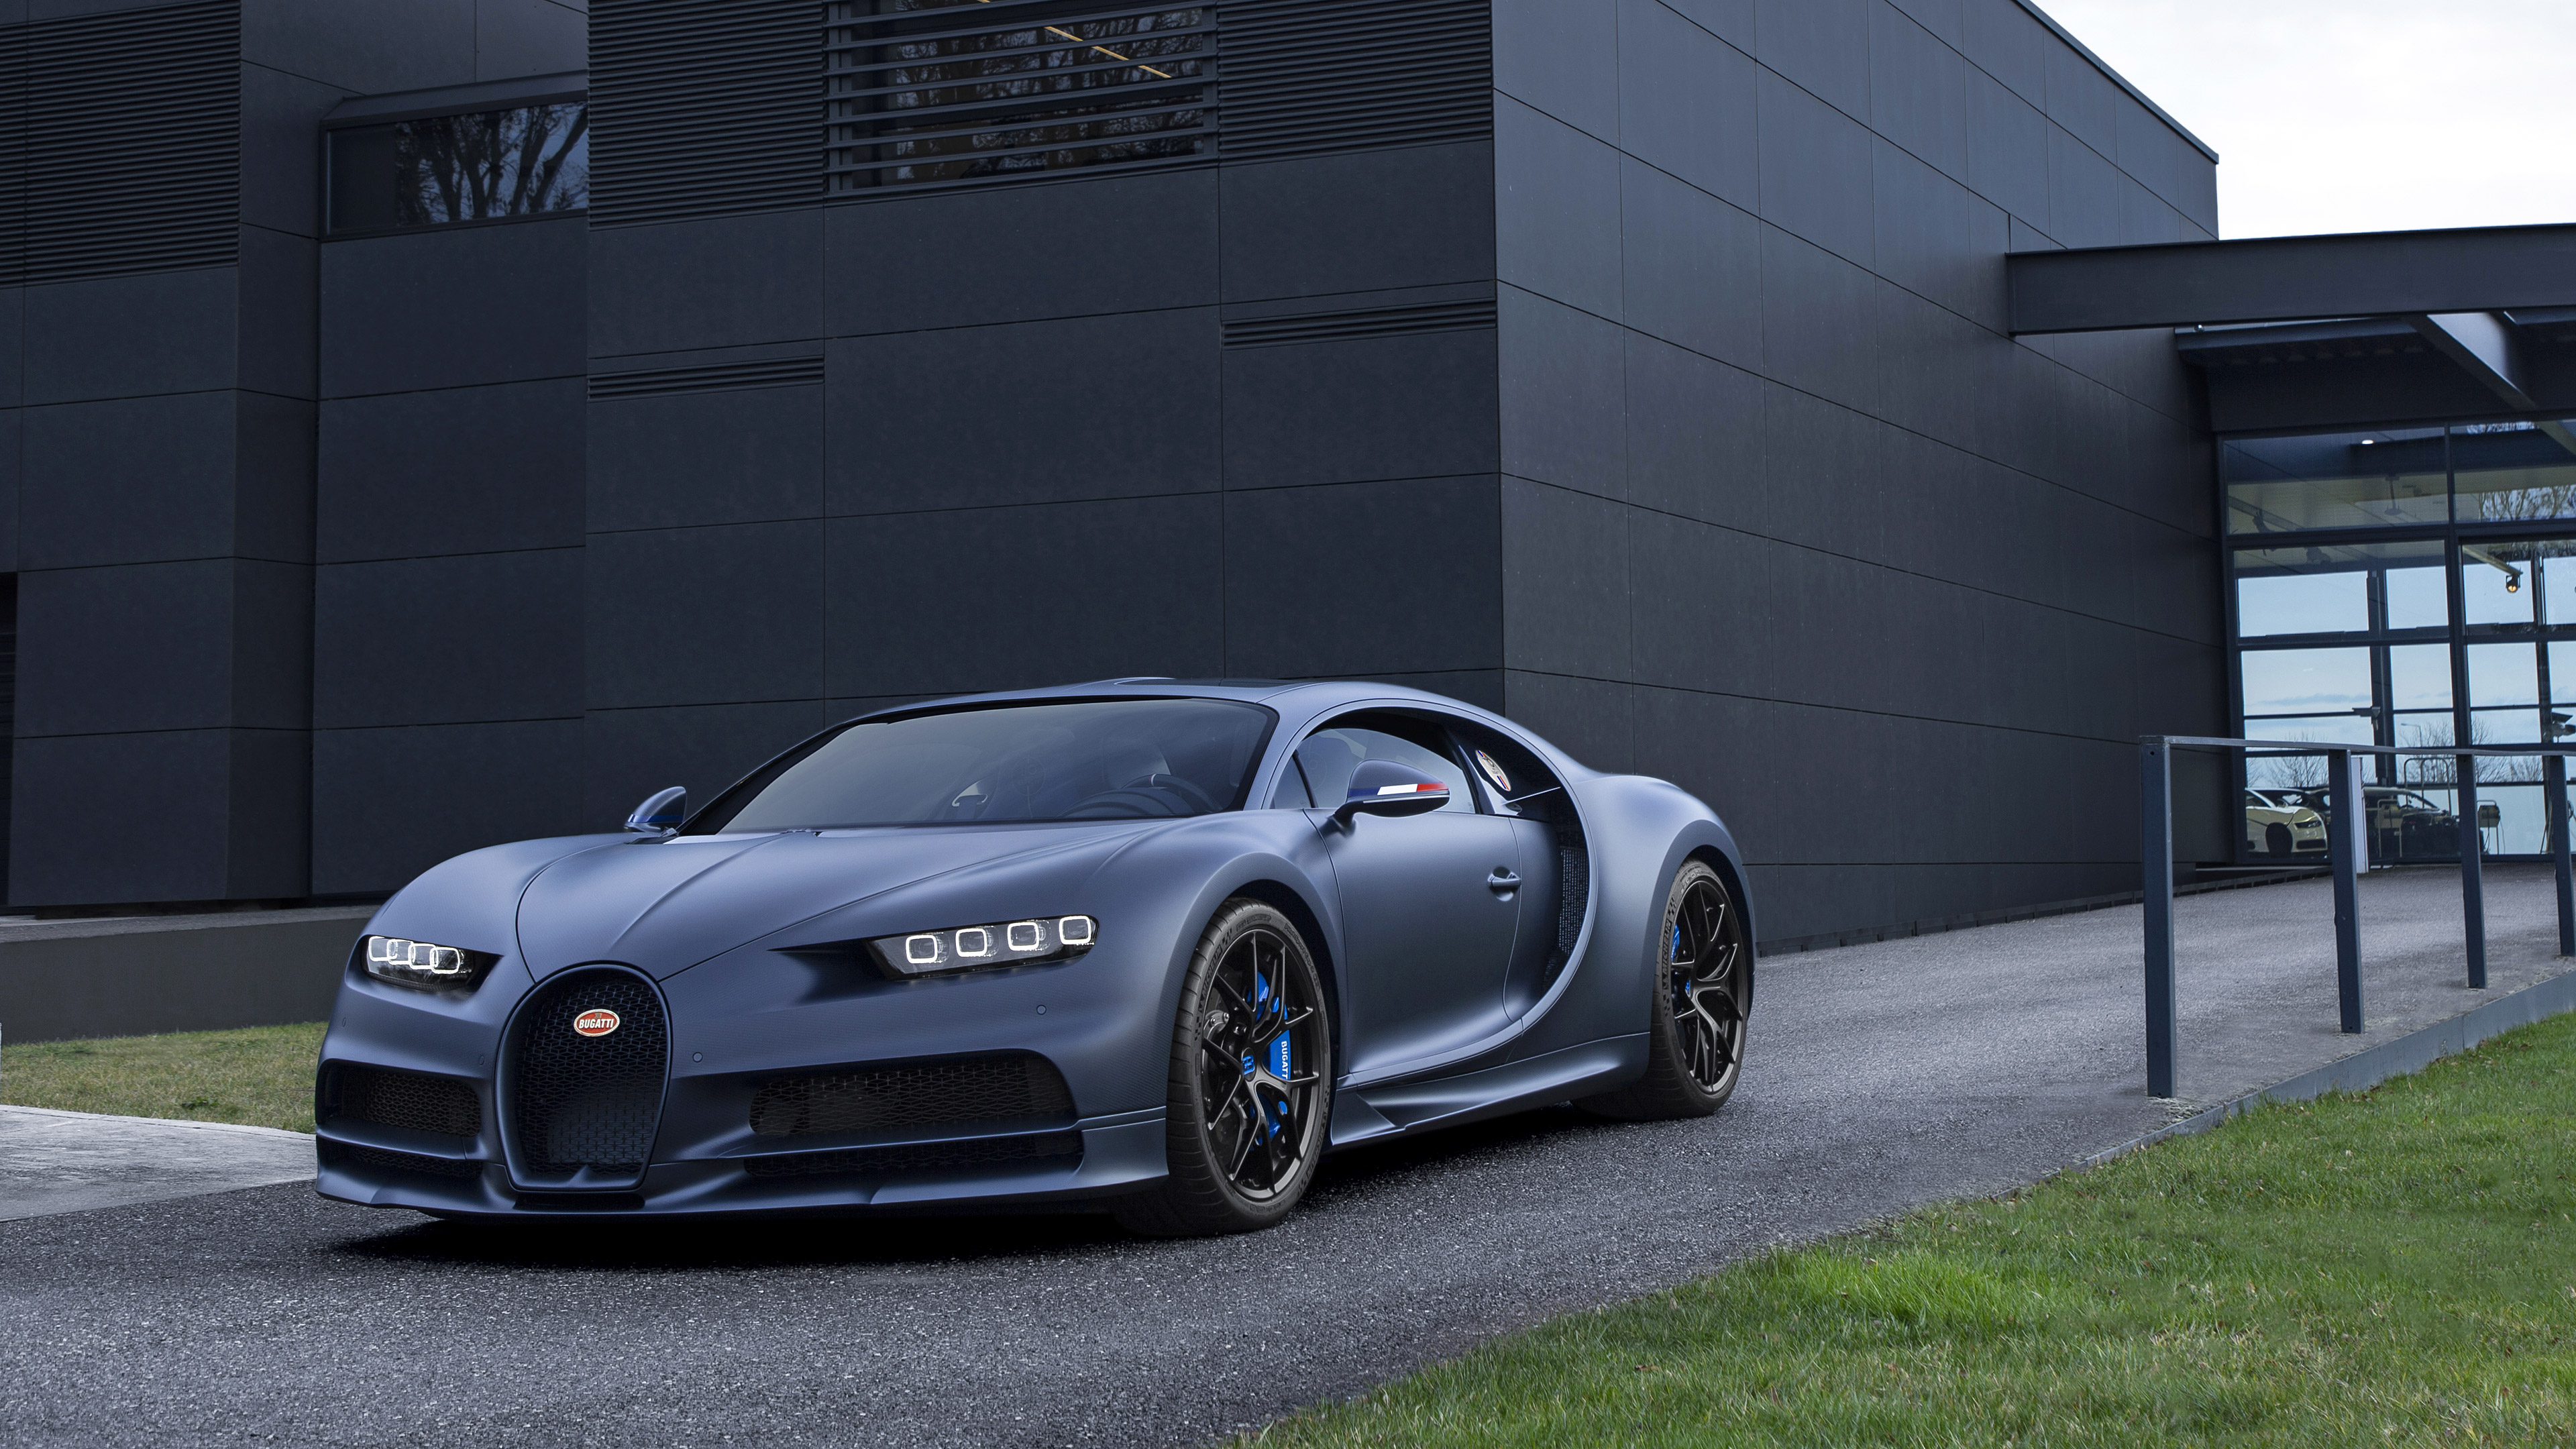  2019 Bugatti Chiron Sport \'110 ans Bugatti\' Wallpaper.